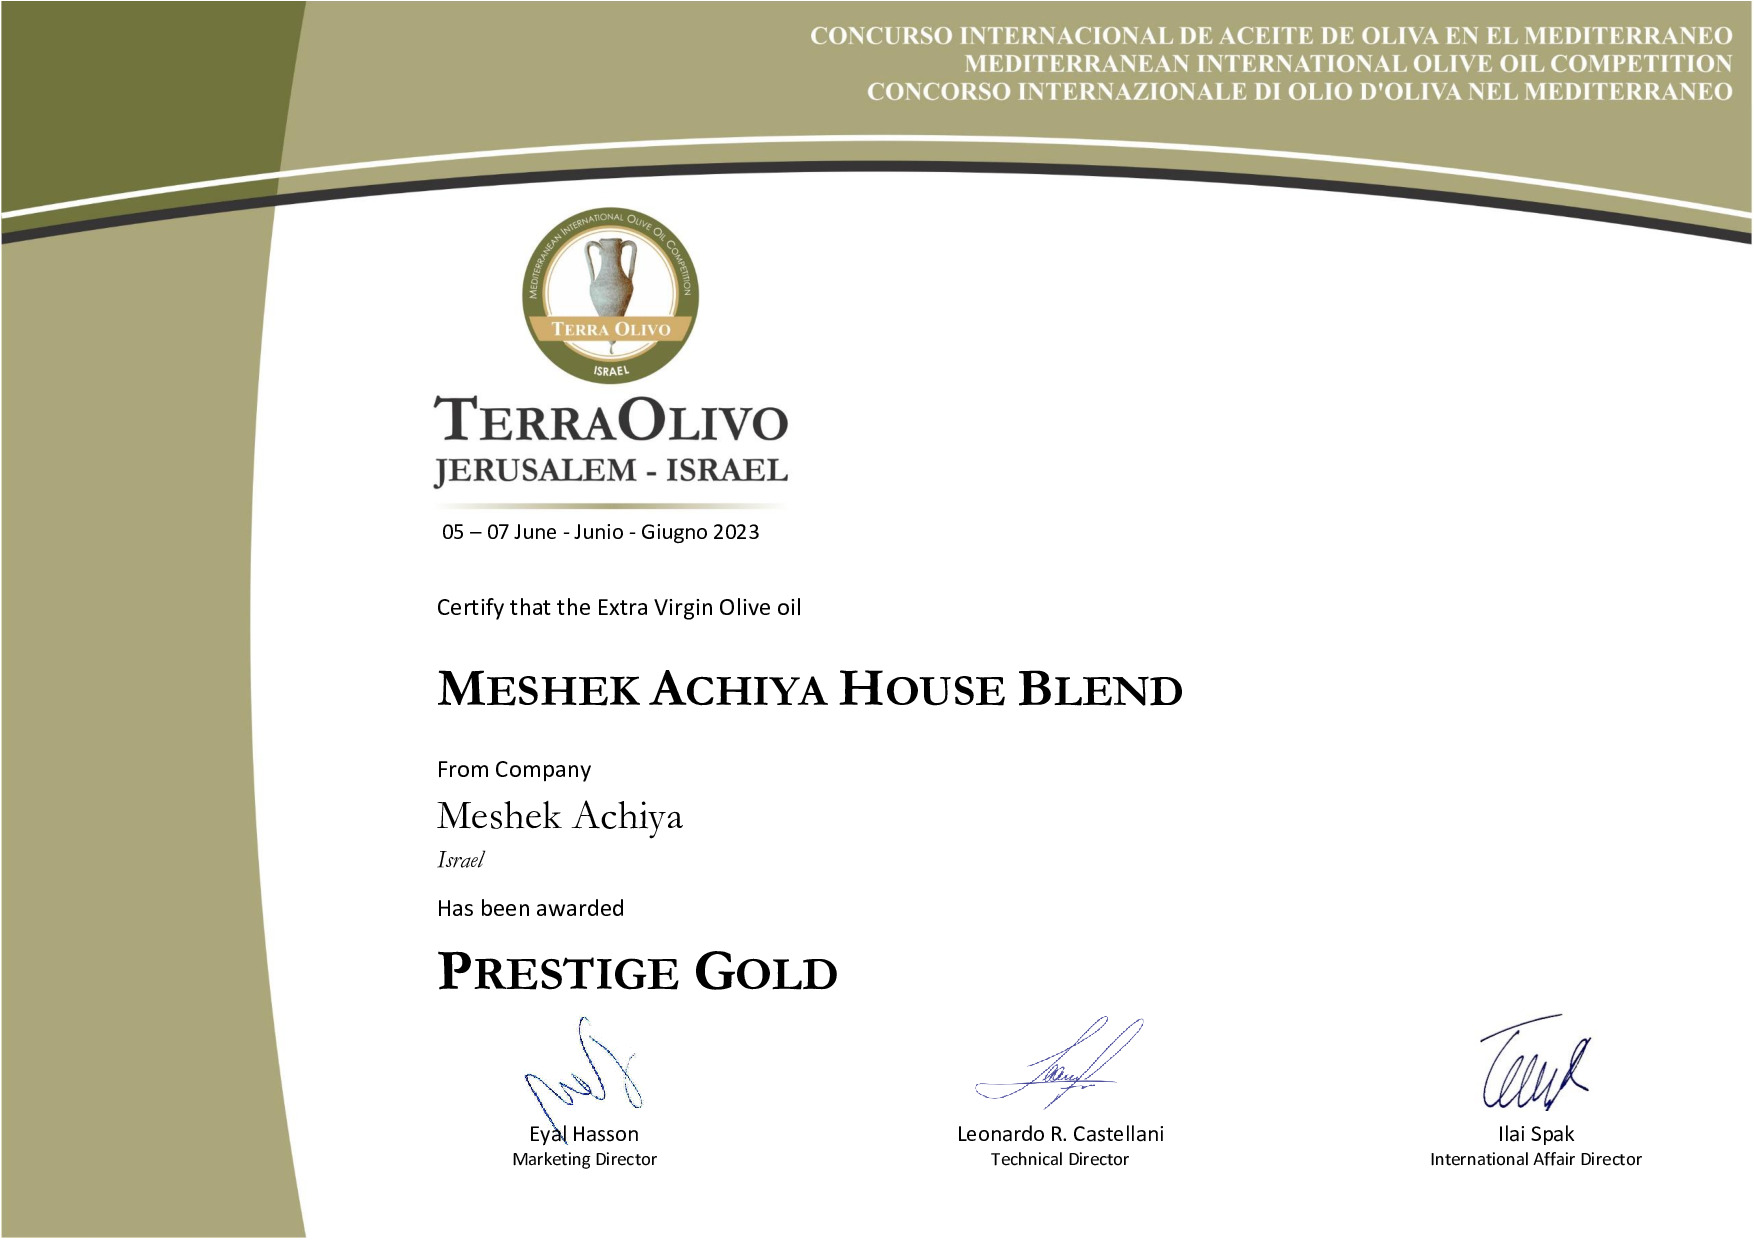 Meshek_Achiya_House_Blend_Prestige_Gold